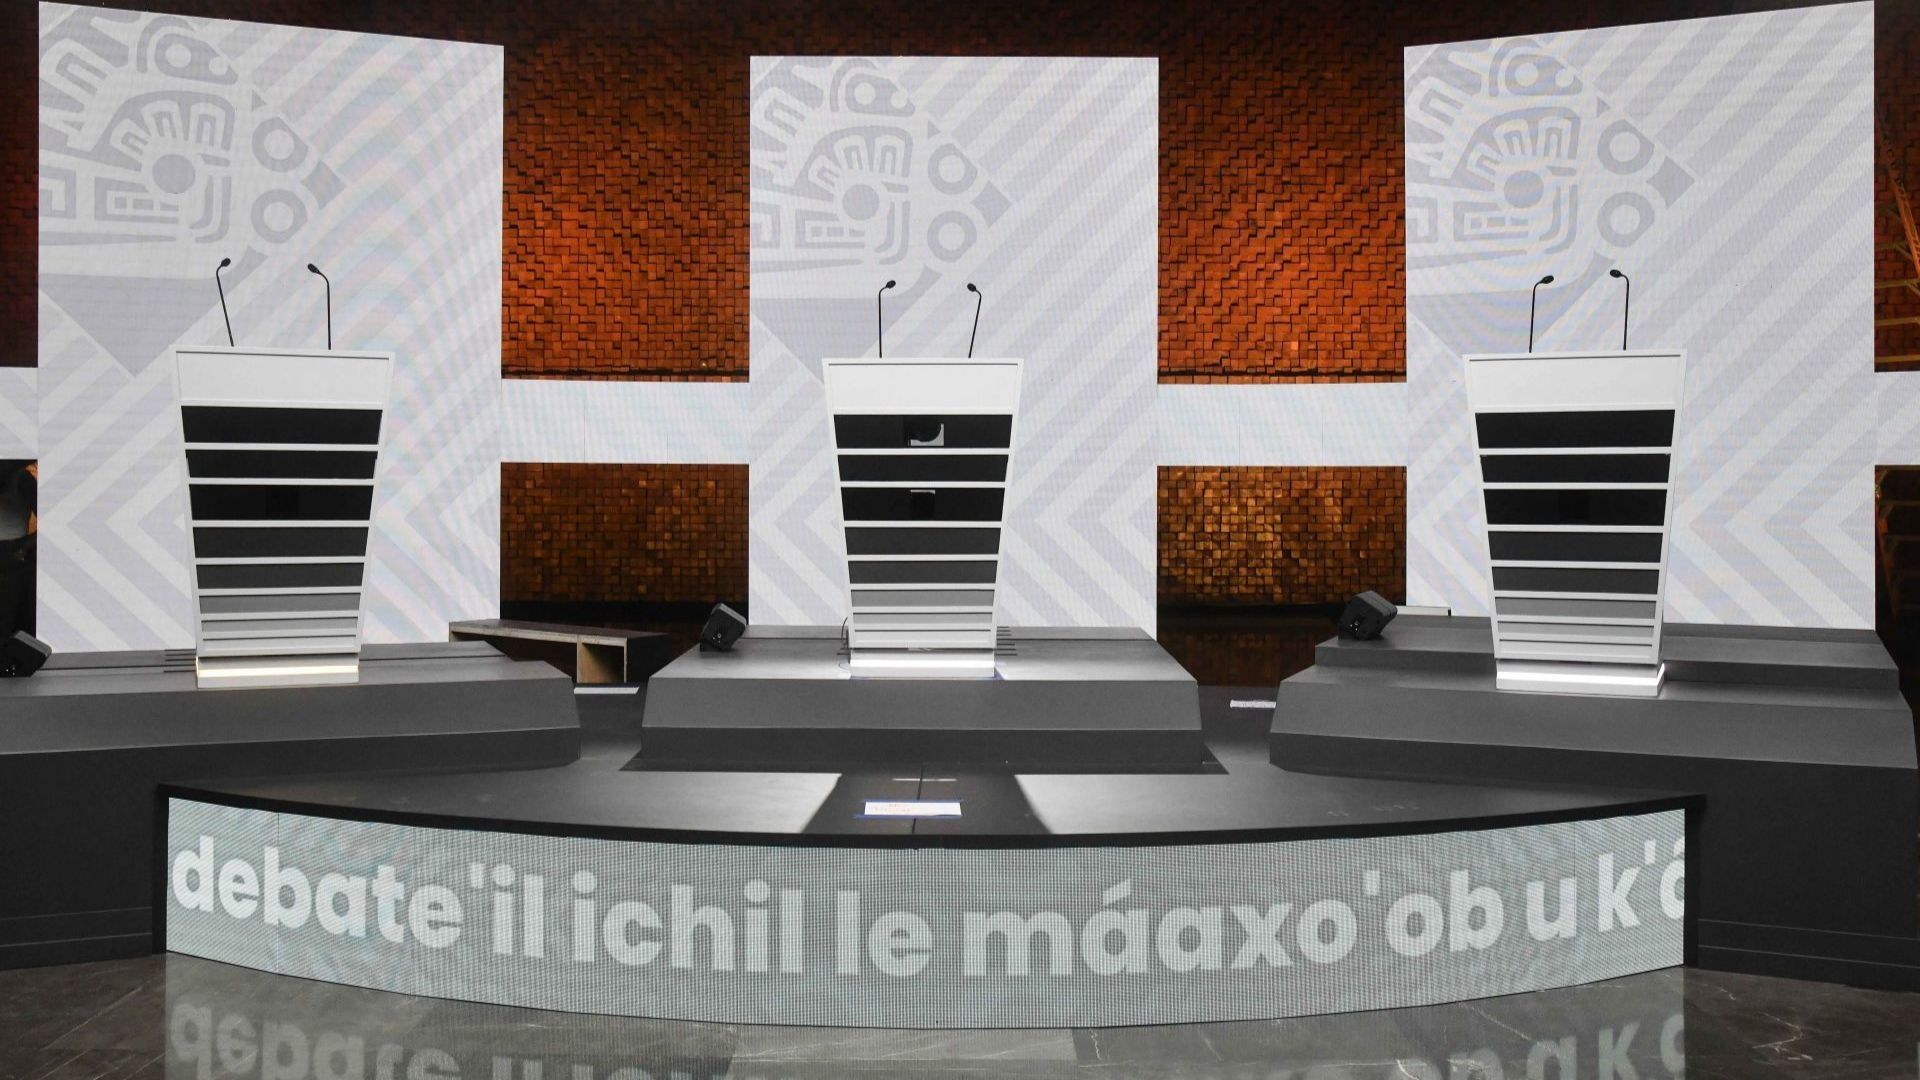 Alistan set del tercer debate presidencial en México